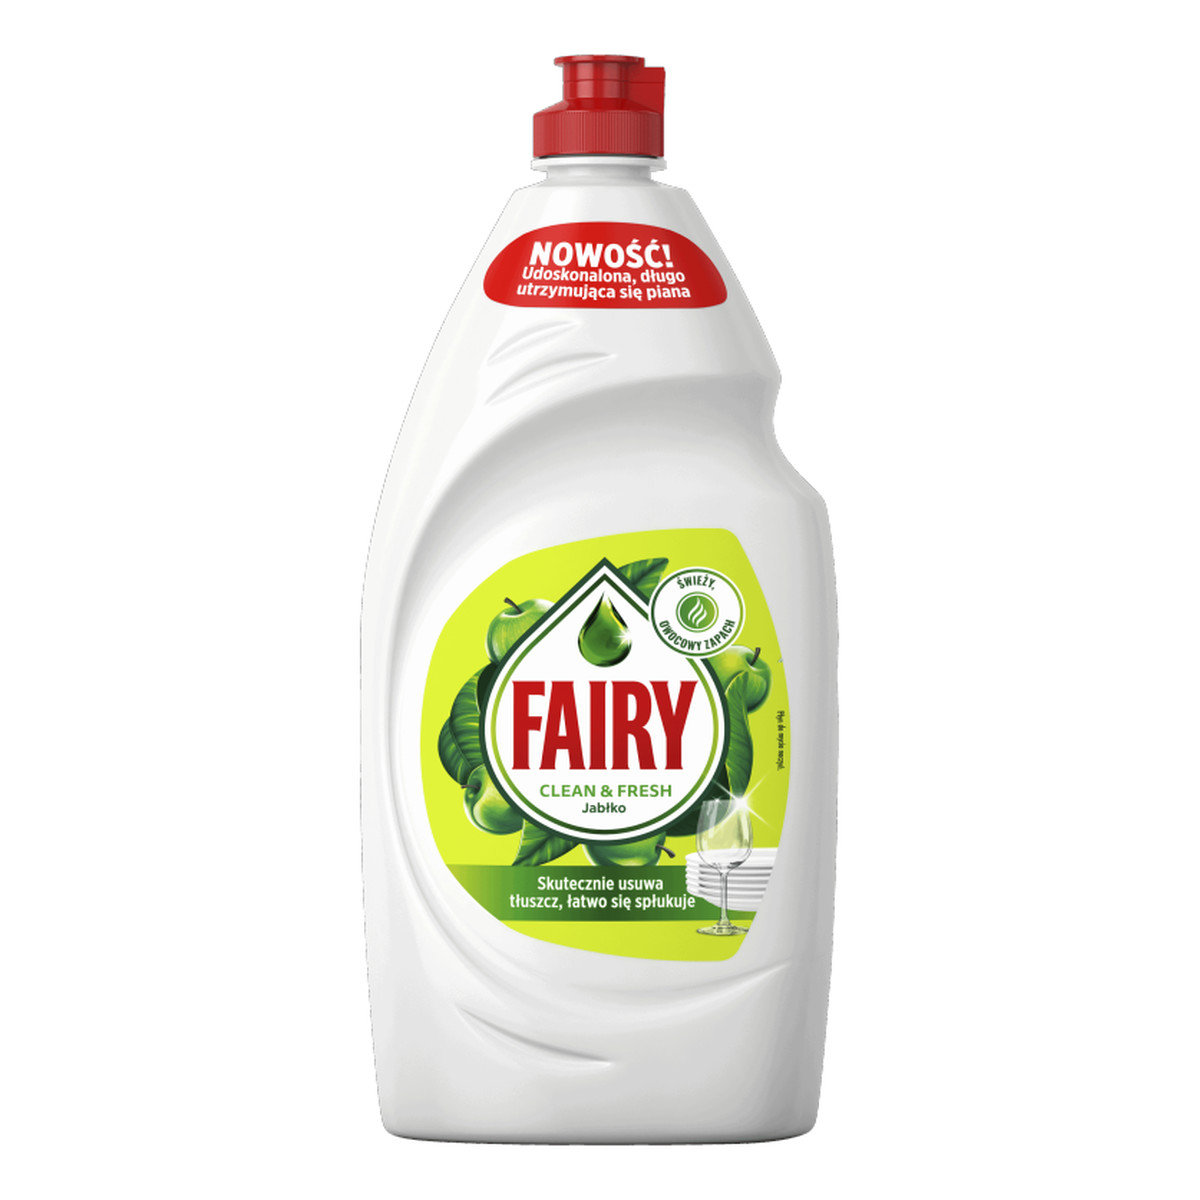 Fairy Clean & Fresh Płyn do mycia naczyń Jabłko 900ml